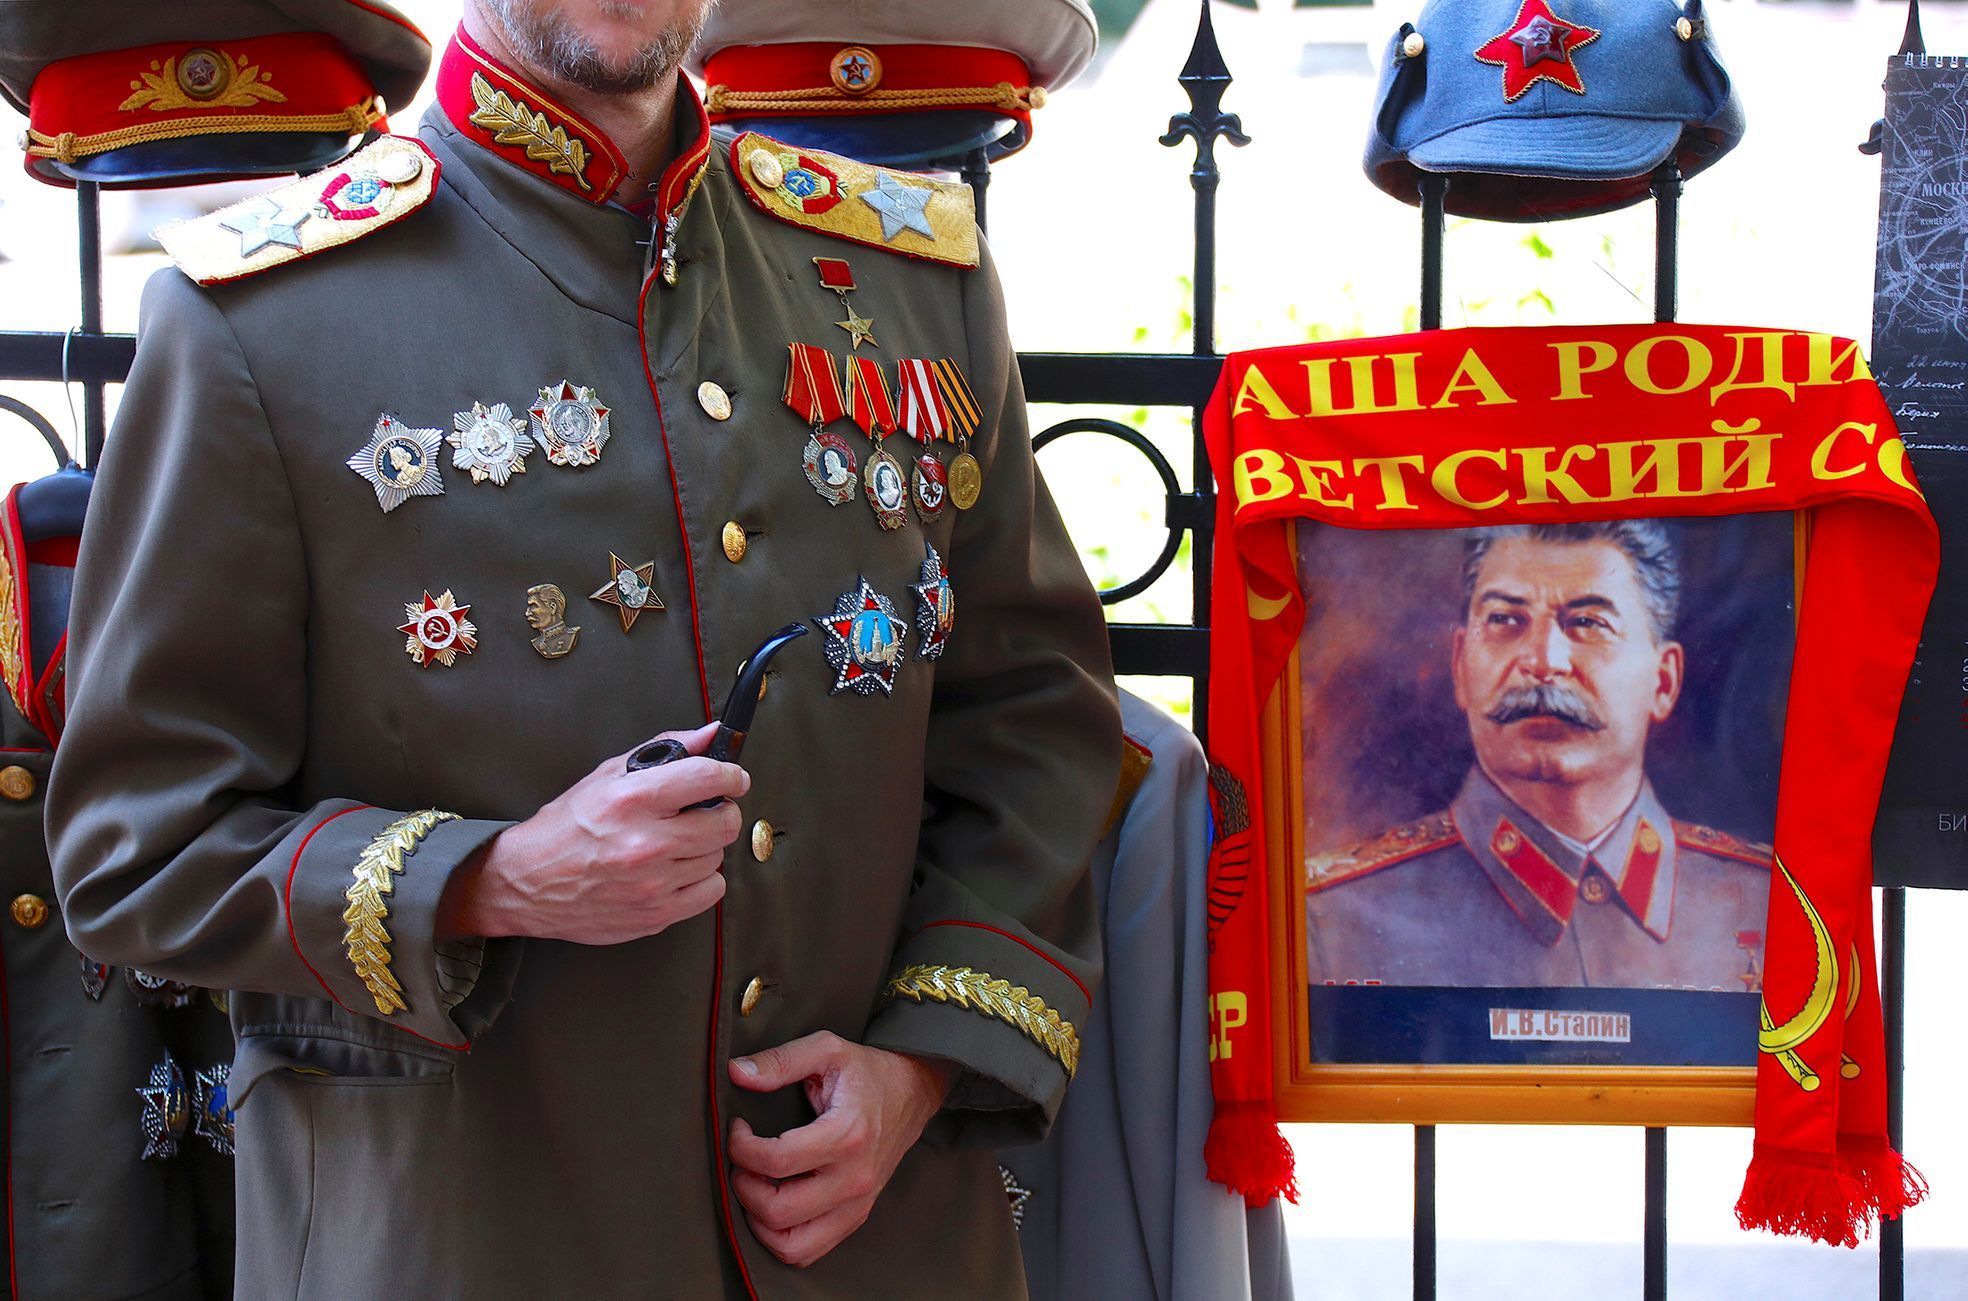 Fotogalerie / Stalinův bunkr / Reuters / 18